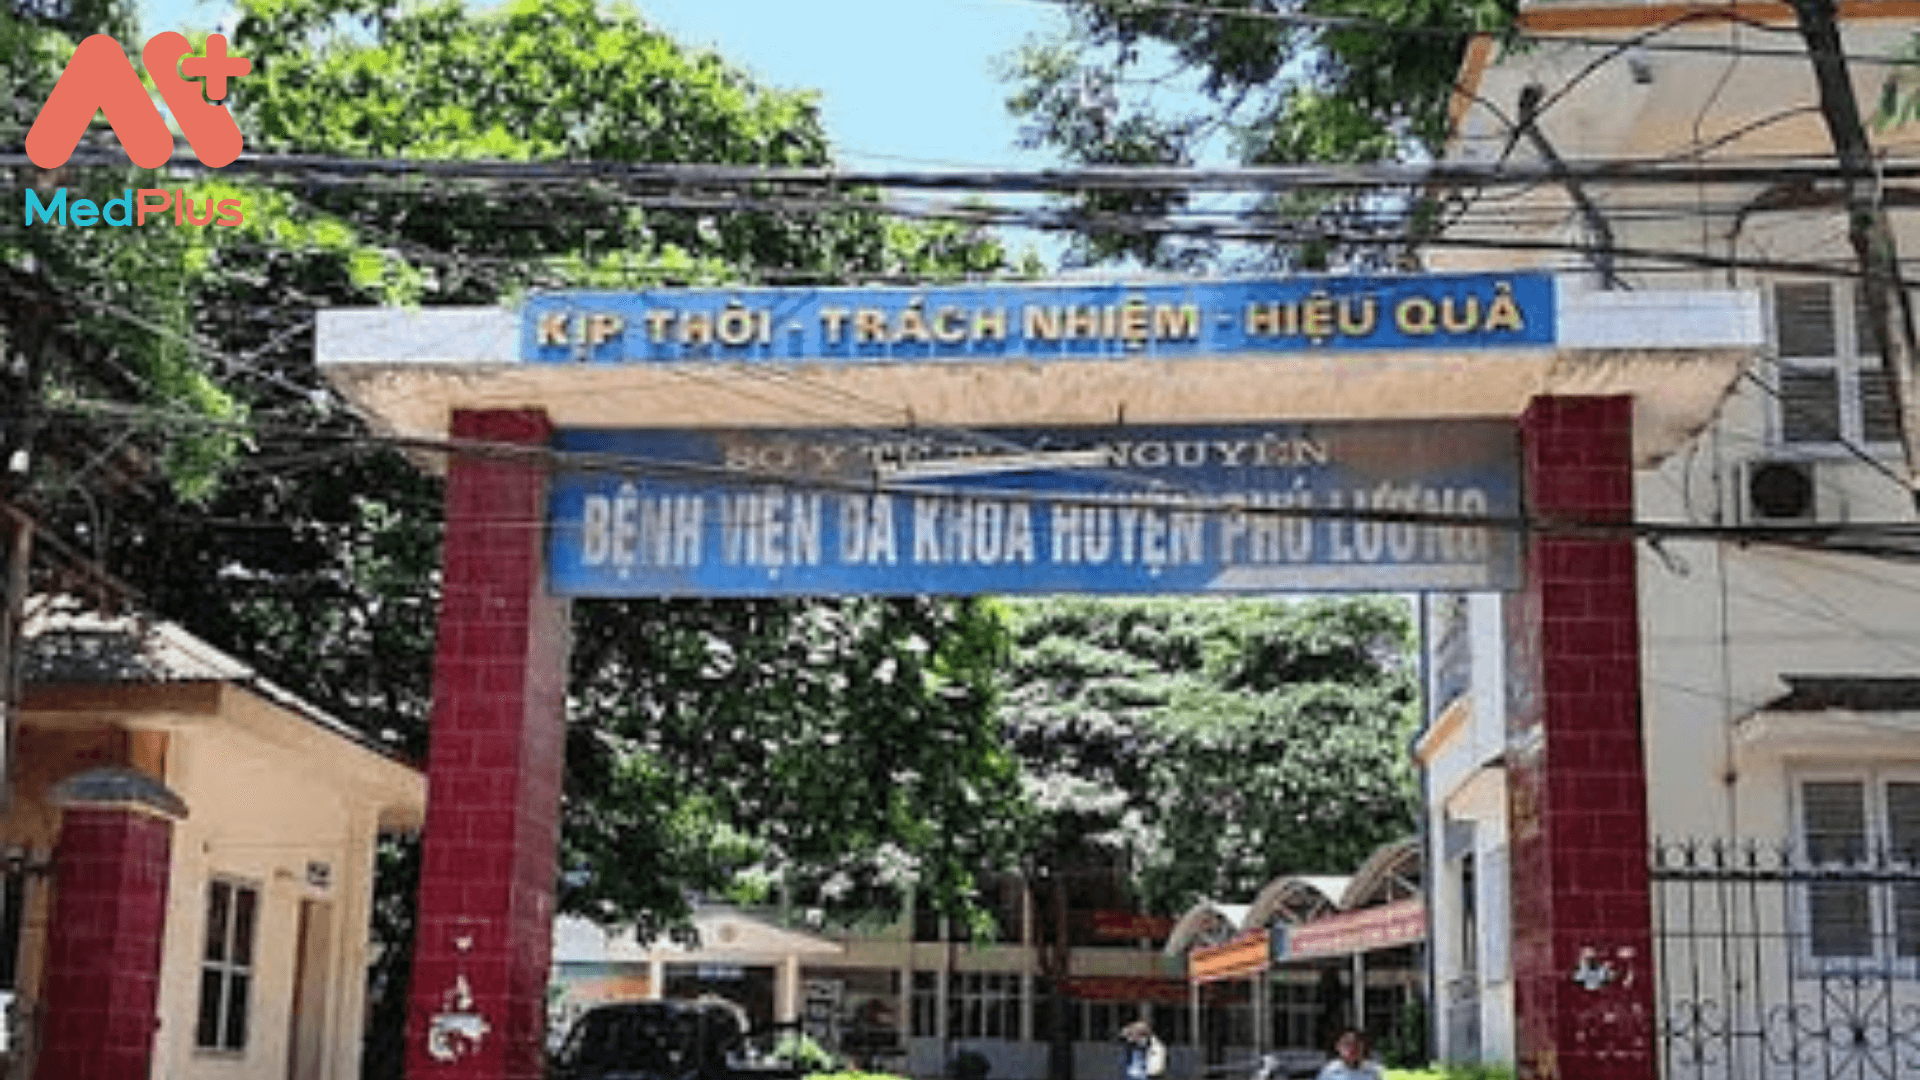 Giới thiệu Bệnh viện đa khoa huyện Phú Lương